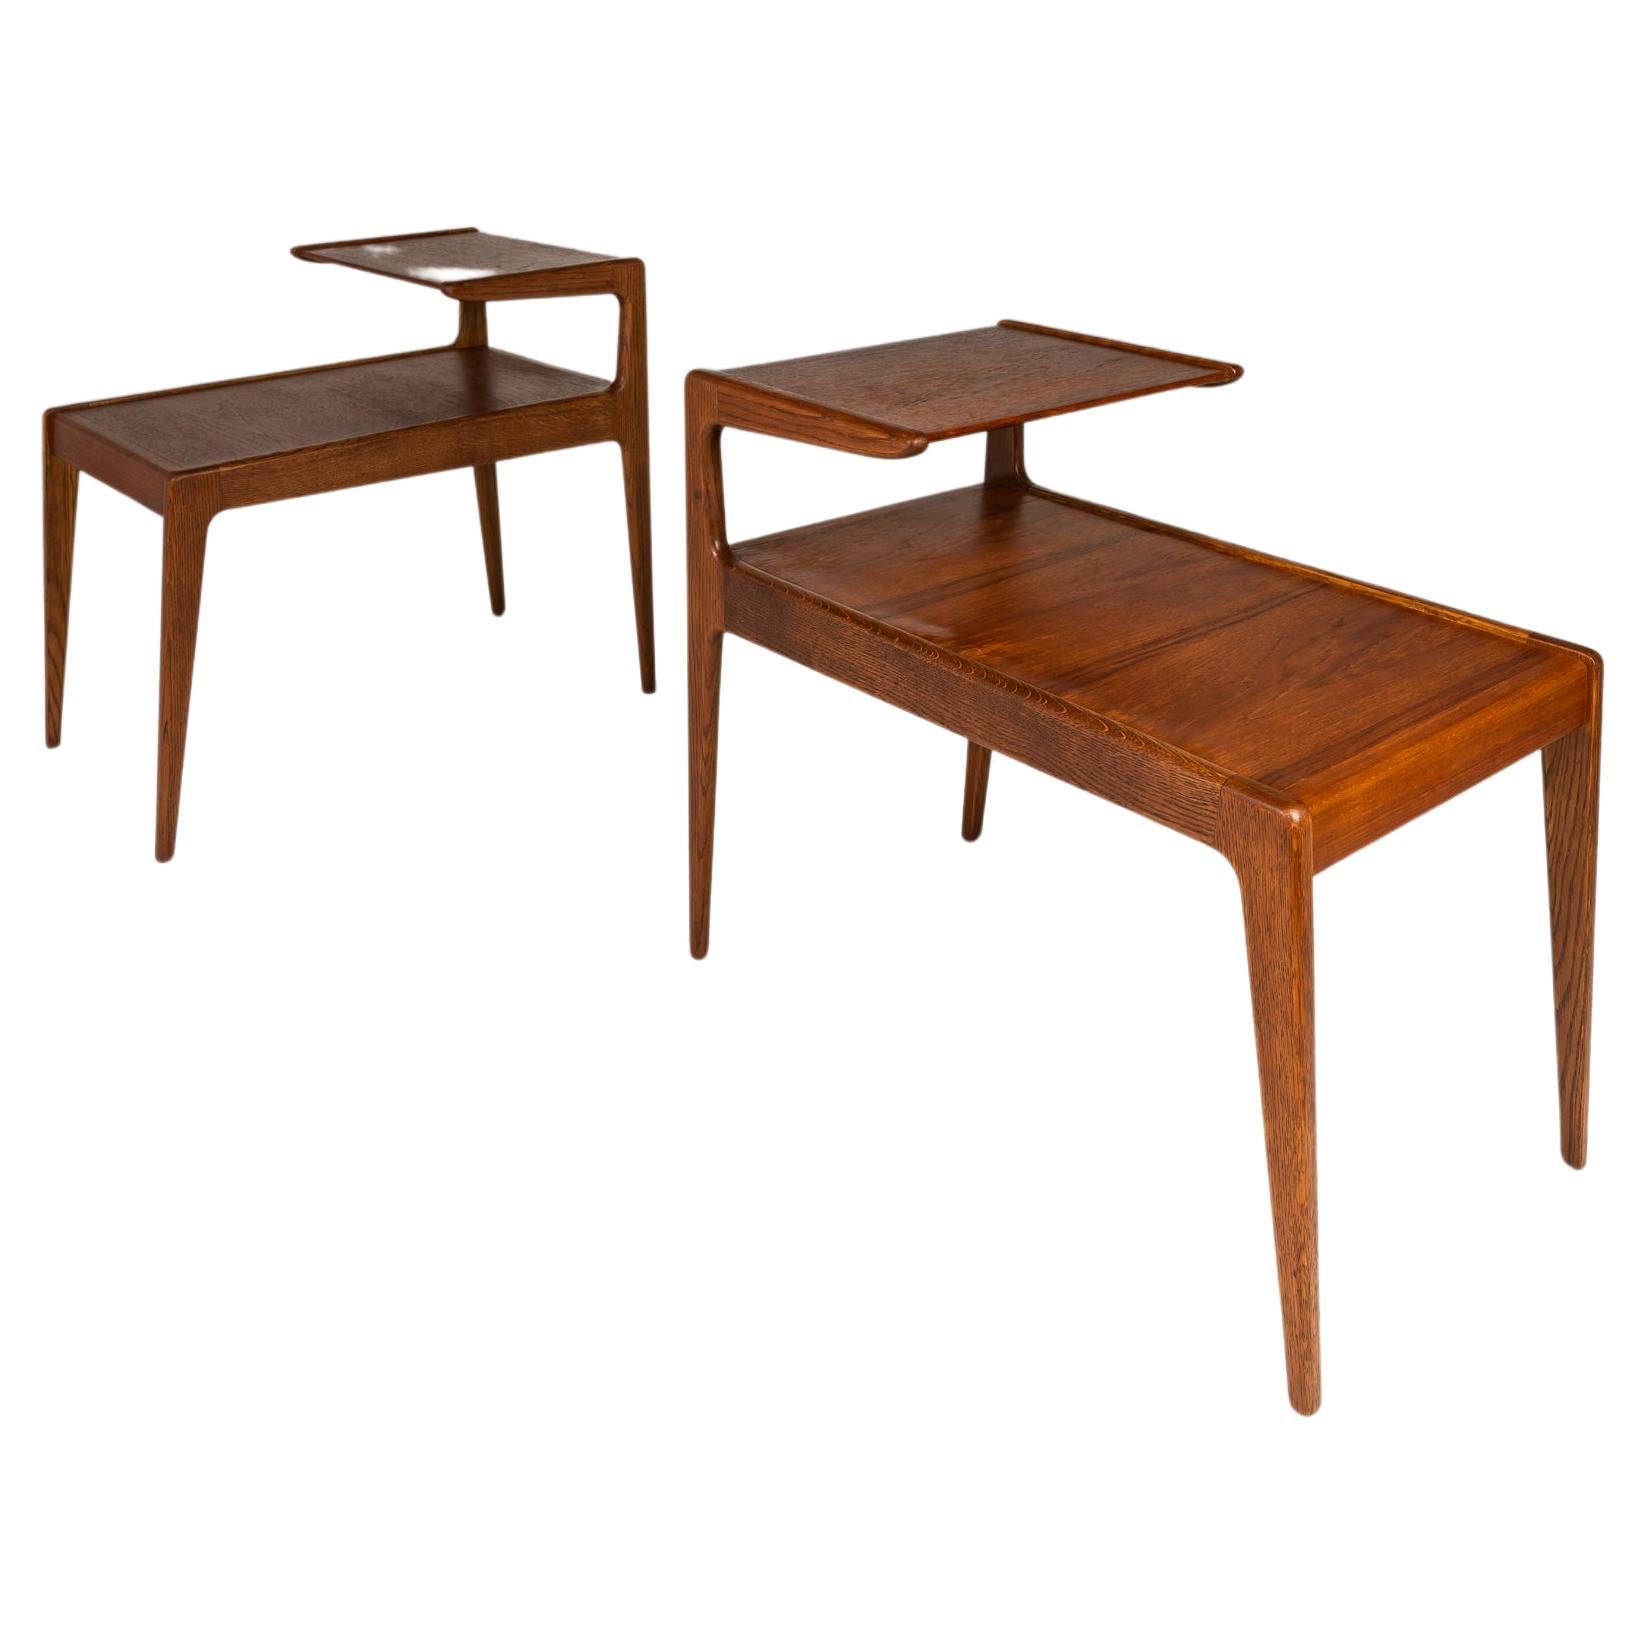 Set of 2 Teak Two Tier Side Tables by Kurt Østervig for Jason Møbler, c. 1960